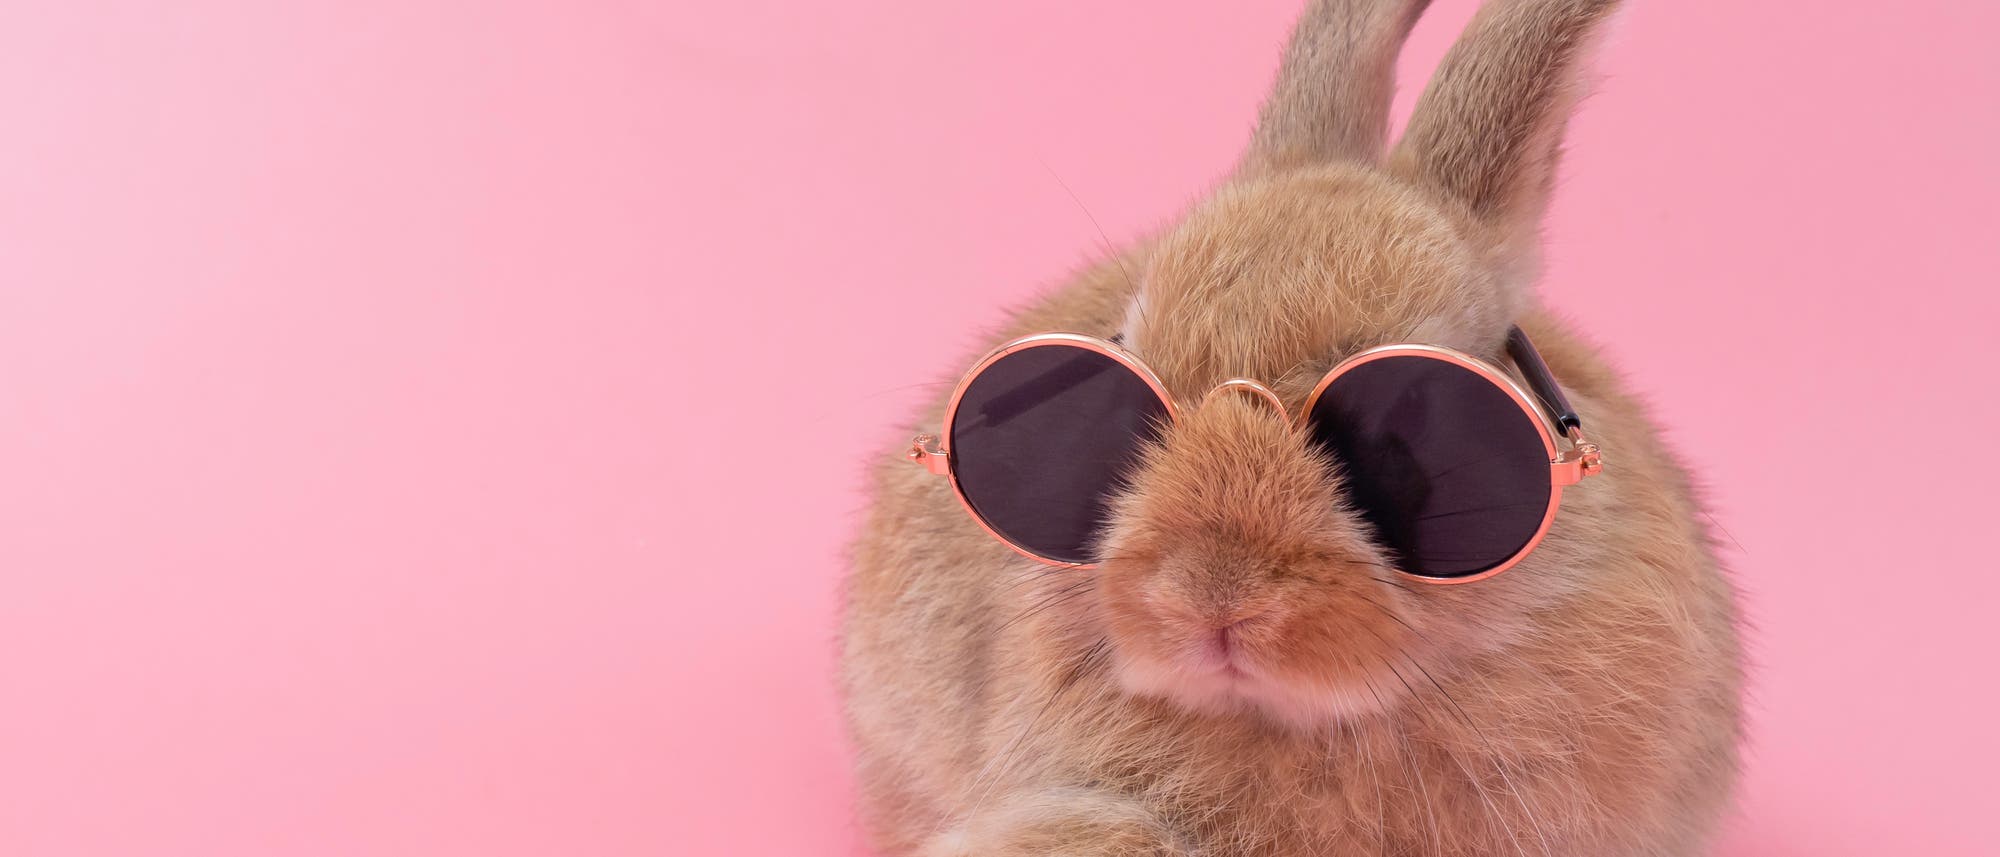 Ein Kaninchen mit Sonnenbrille vor rosafarbenem Hintergrund. Bin nicht sicher, ob es eher niedlich oder verstörend ist.